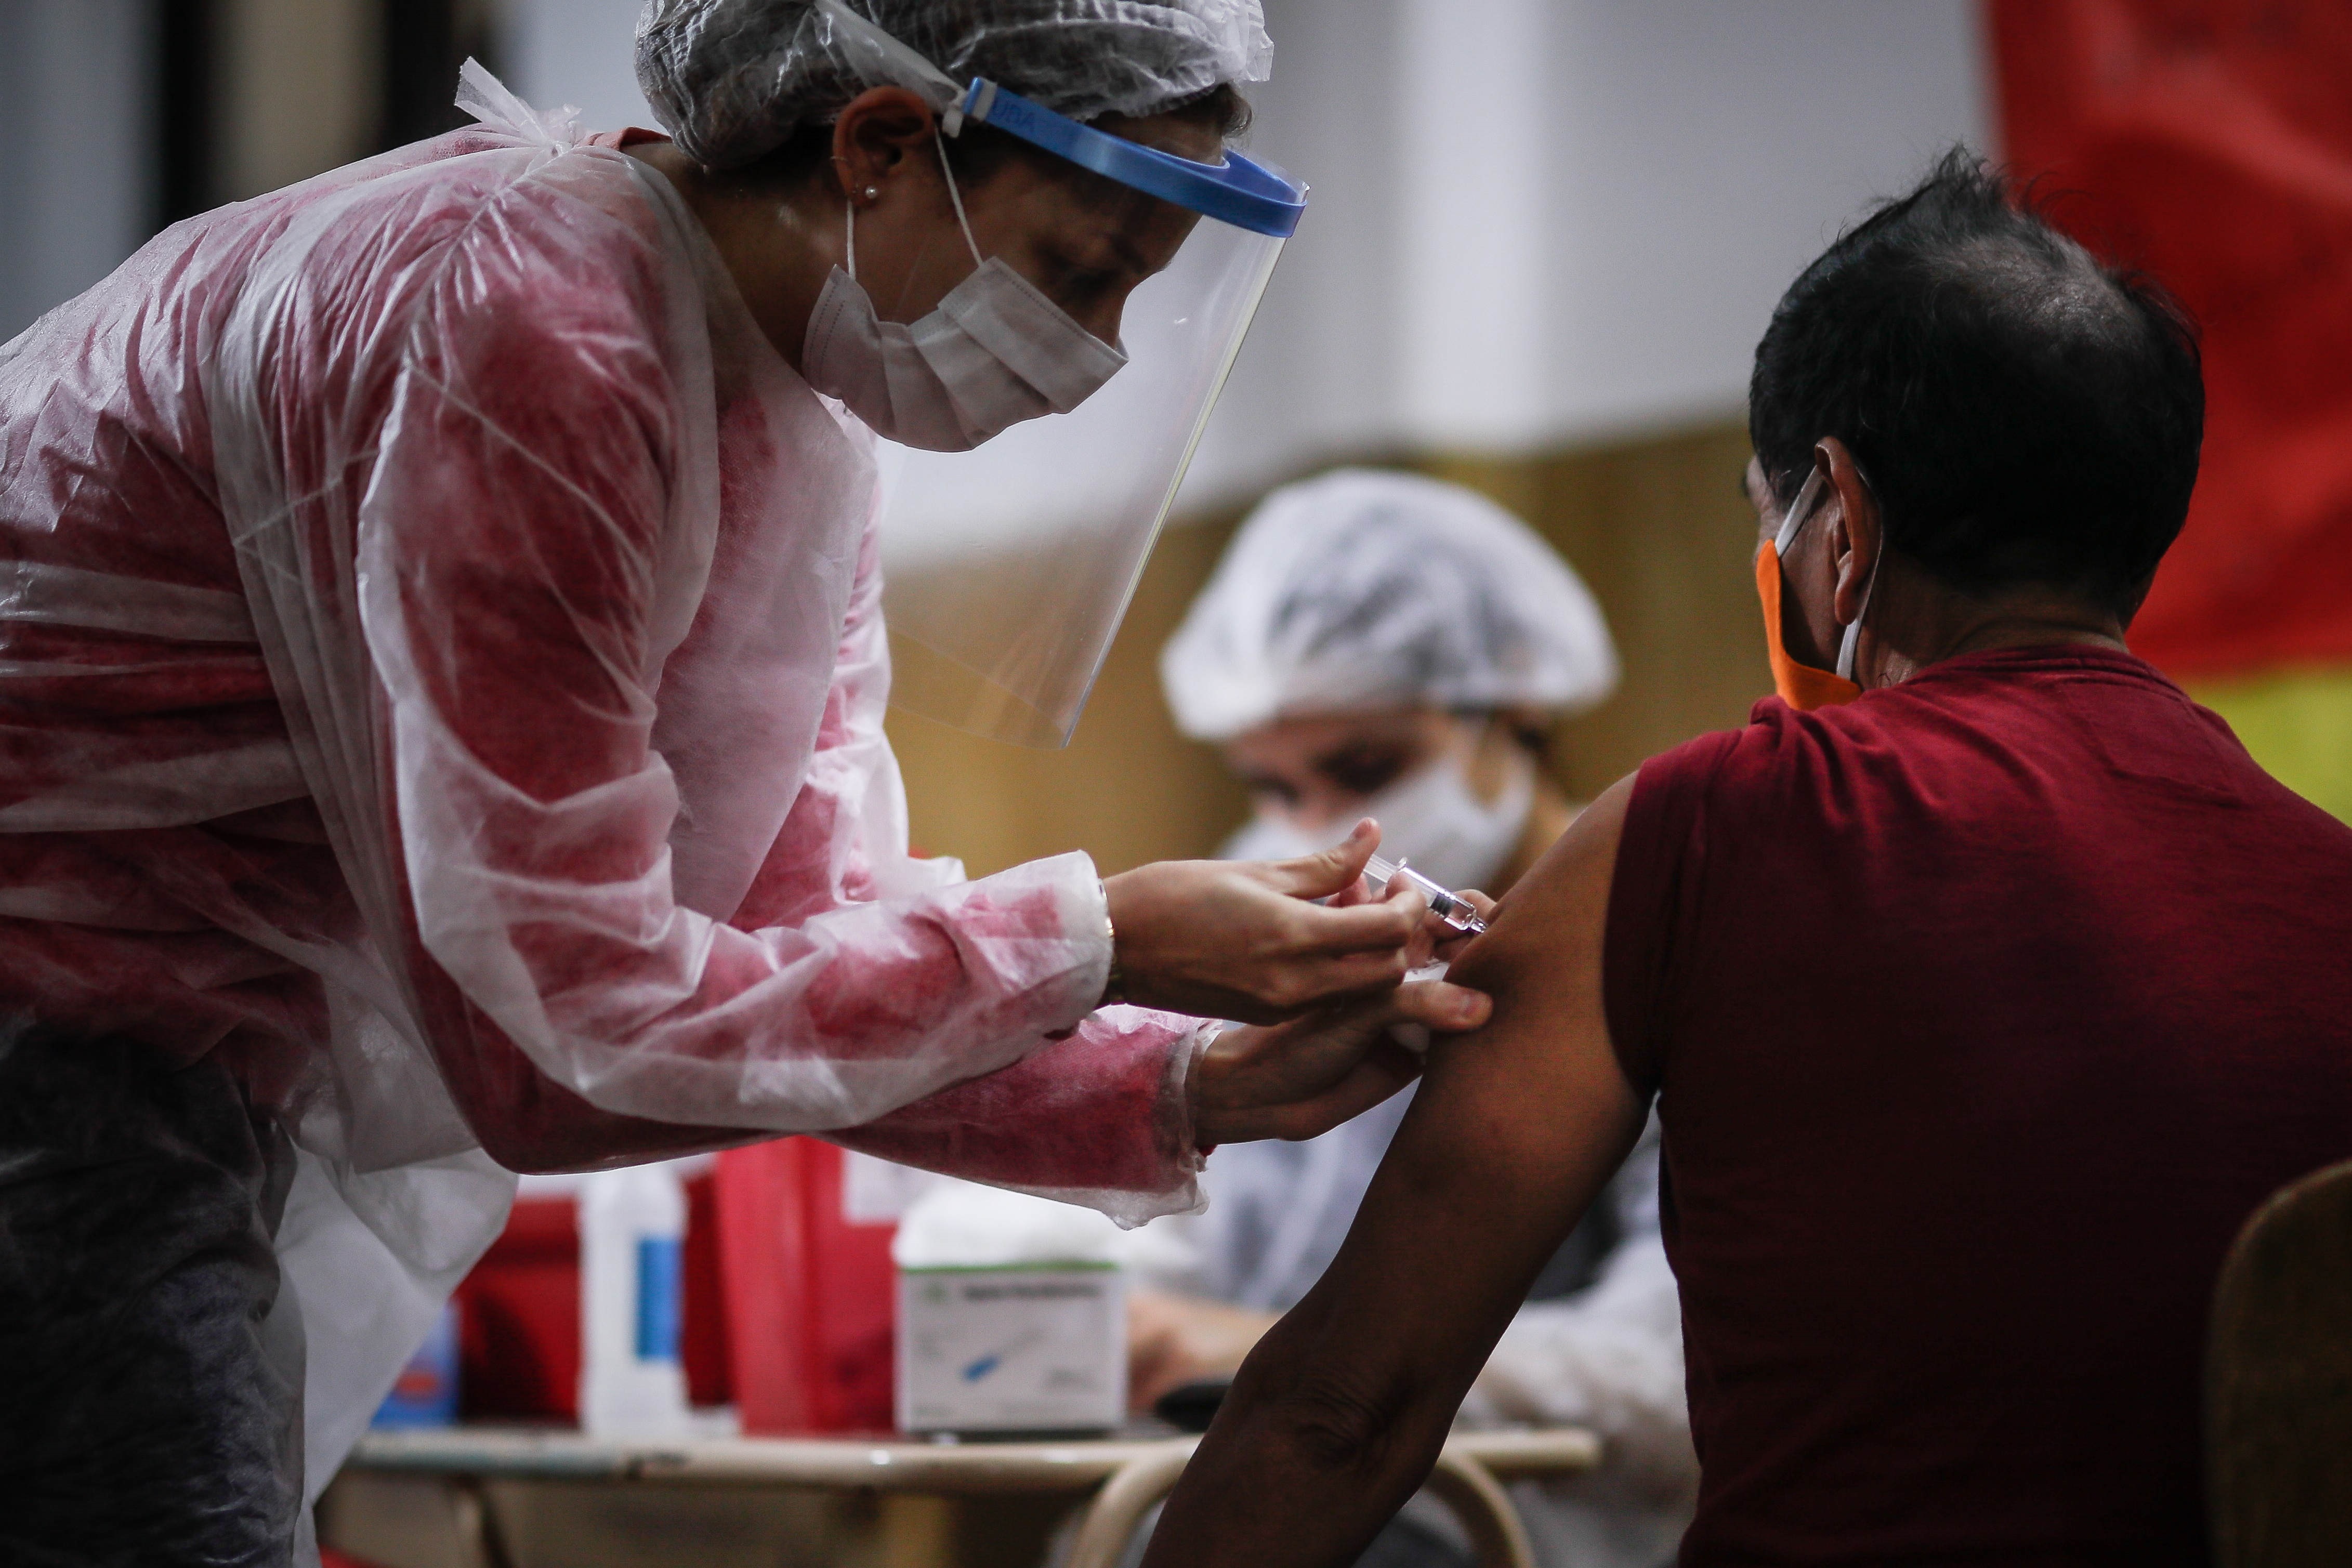 Tailandia comenzará a probar vacuna contra el coronavirus en humanos